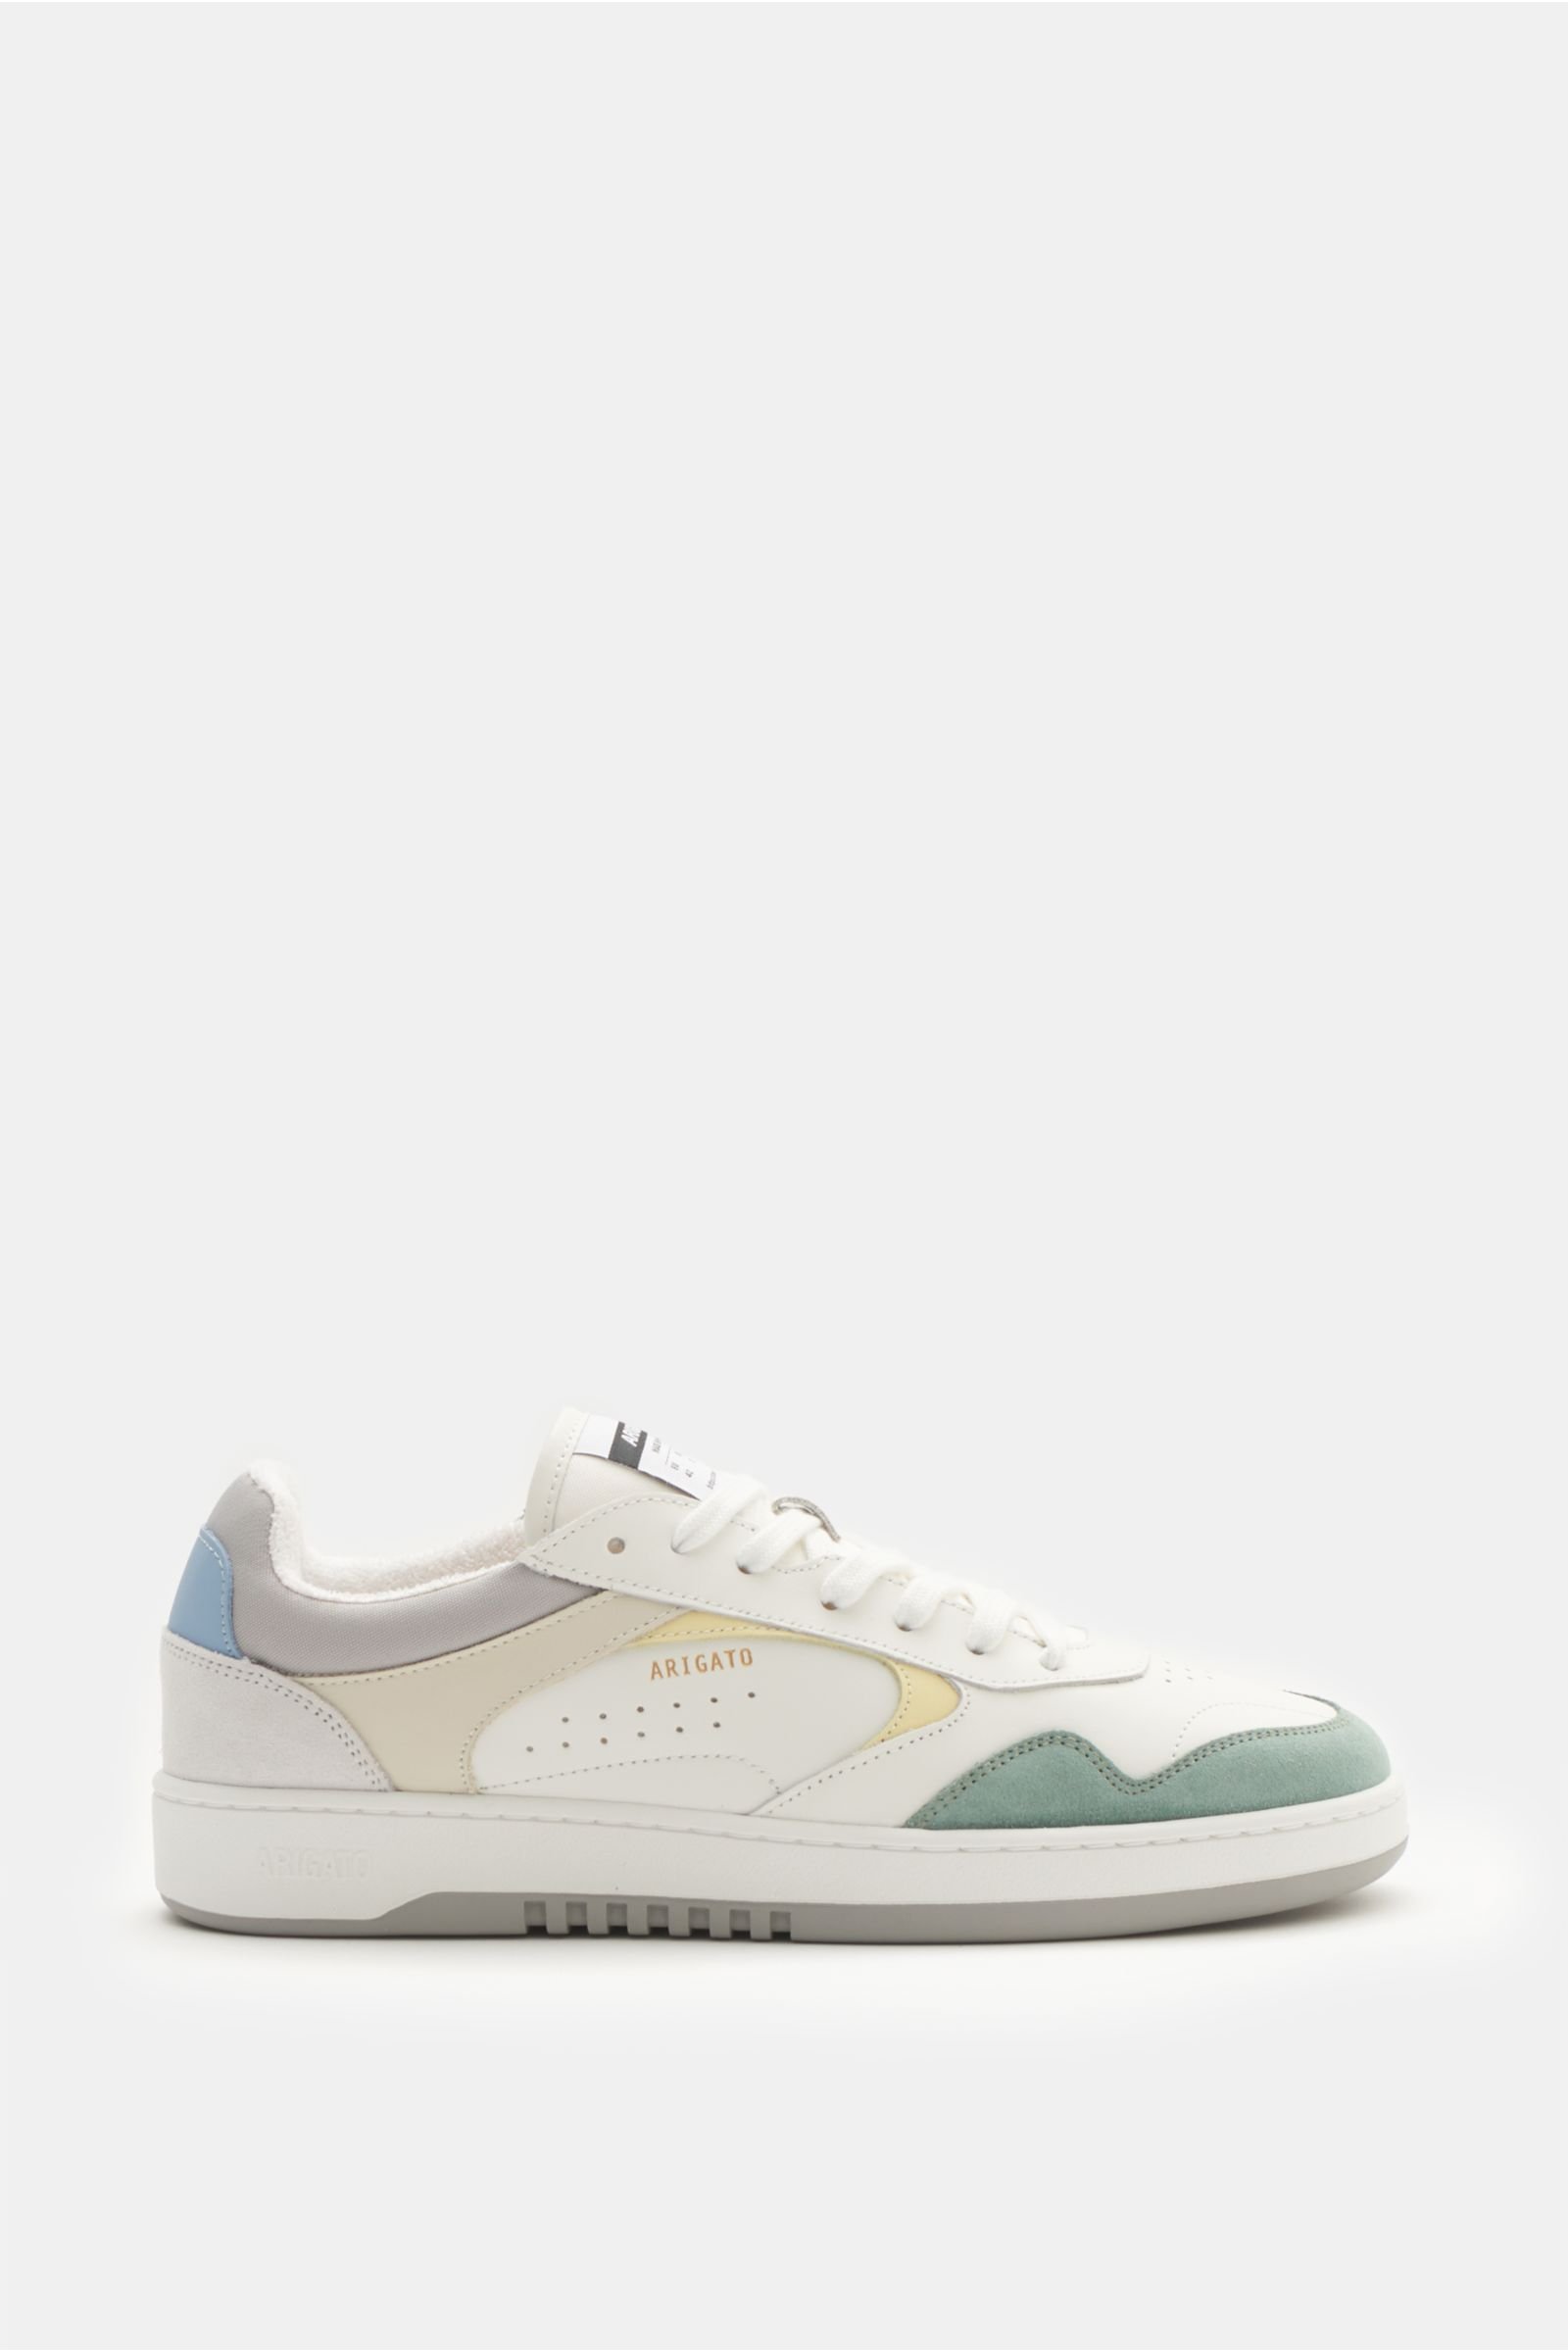 Sneakers 'Ario' white/mint green/pastel yellow